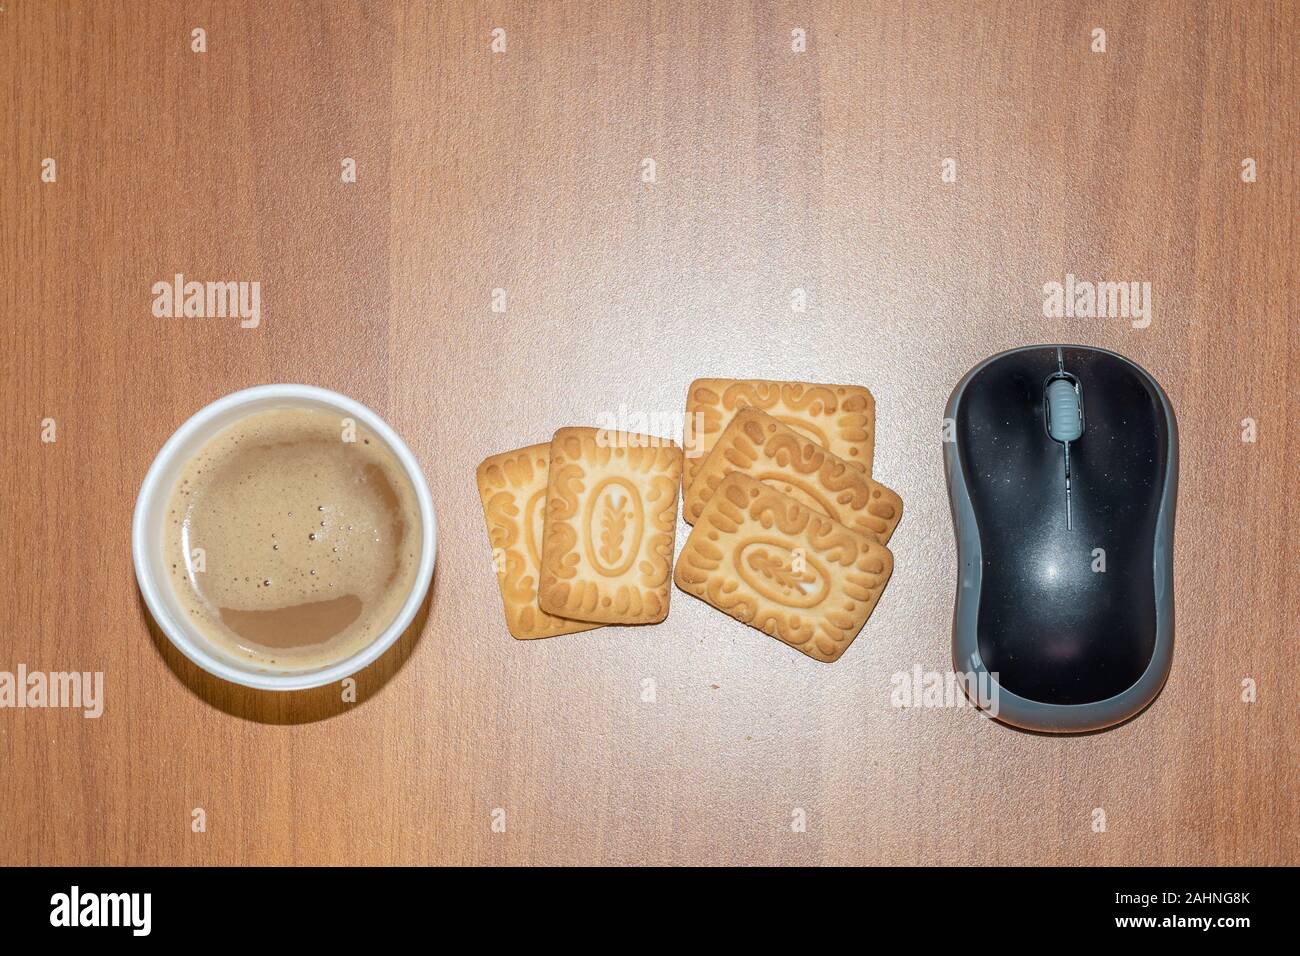 Heißen Tee Kaffee mit Milch und Honig Kekse Cookies - Computer Maus - Office break-caption Raum Stockfoto